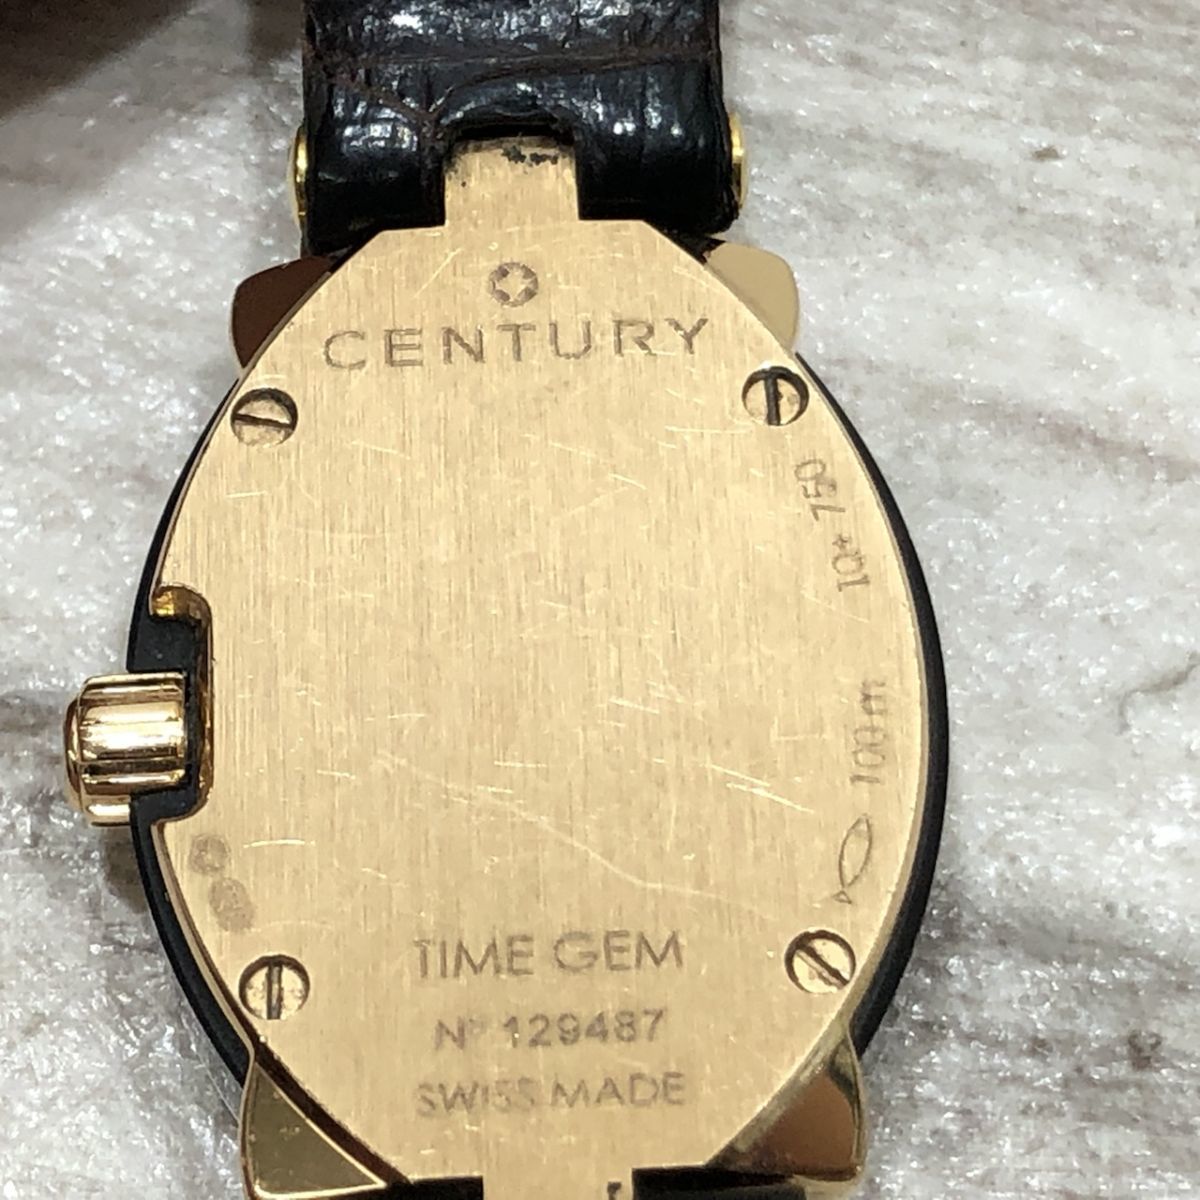  неподвижный CENTURY Century TIME GEM время jempli Madonna K18 750 печать QZ ракушка циферблат кожа ремень женские наручные часы [Q1878]